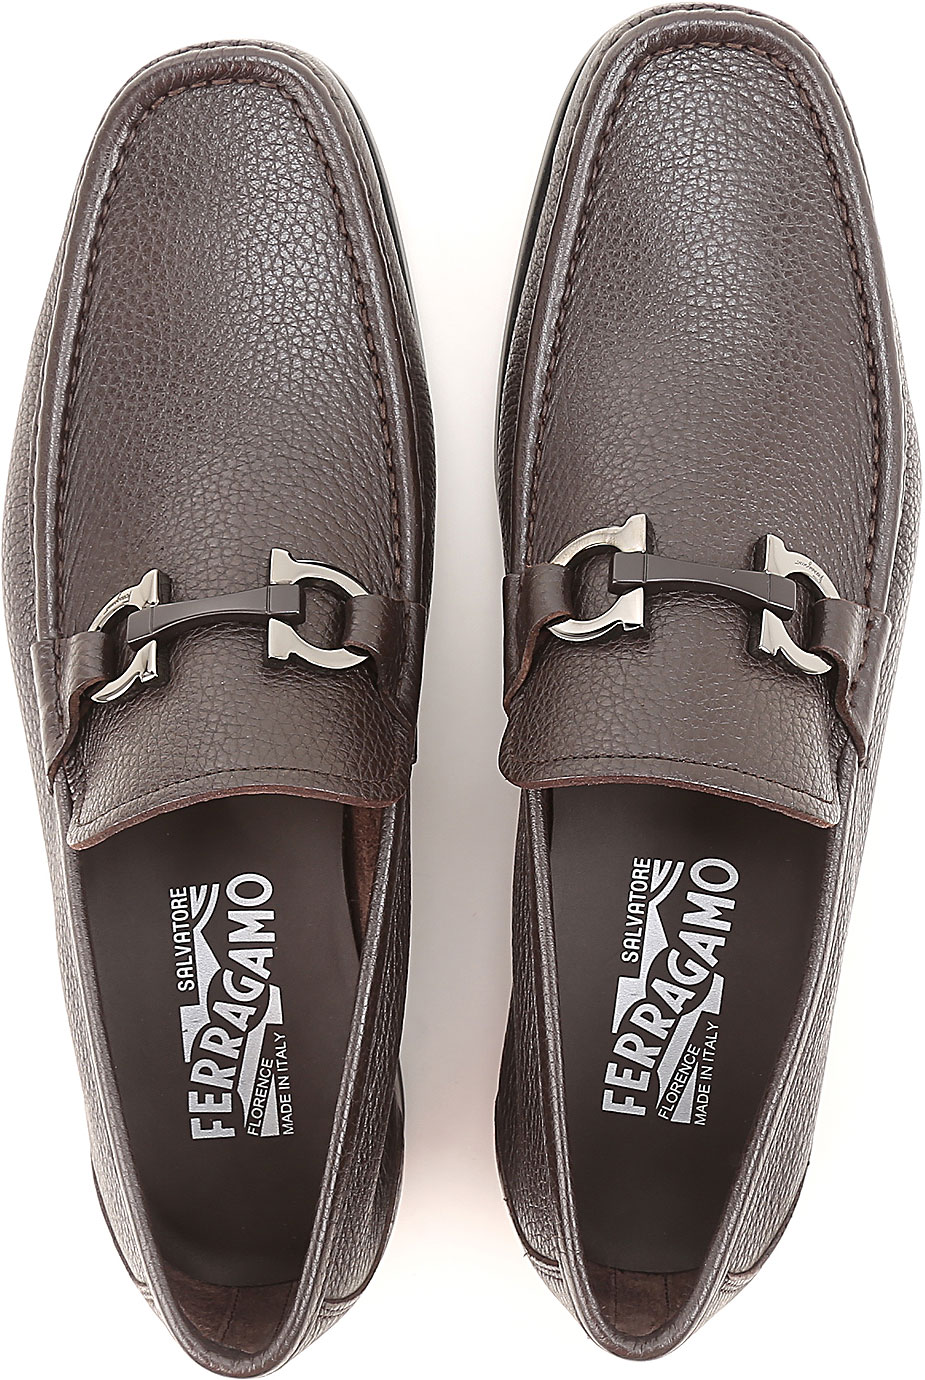 Mens Shoes Salvatore Ferragamo, Style code: 0642847-grandioso-